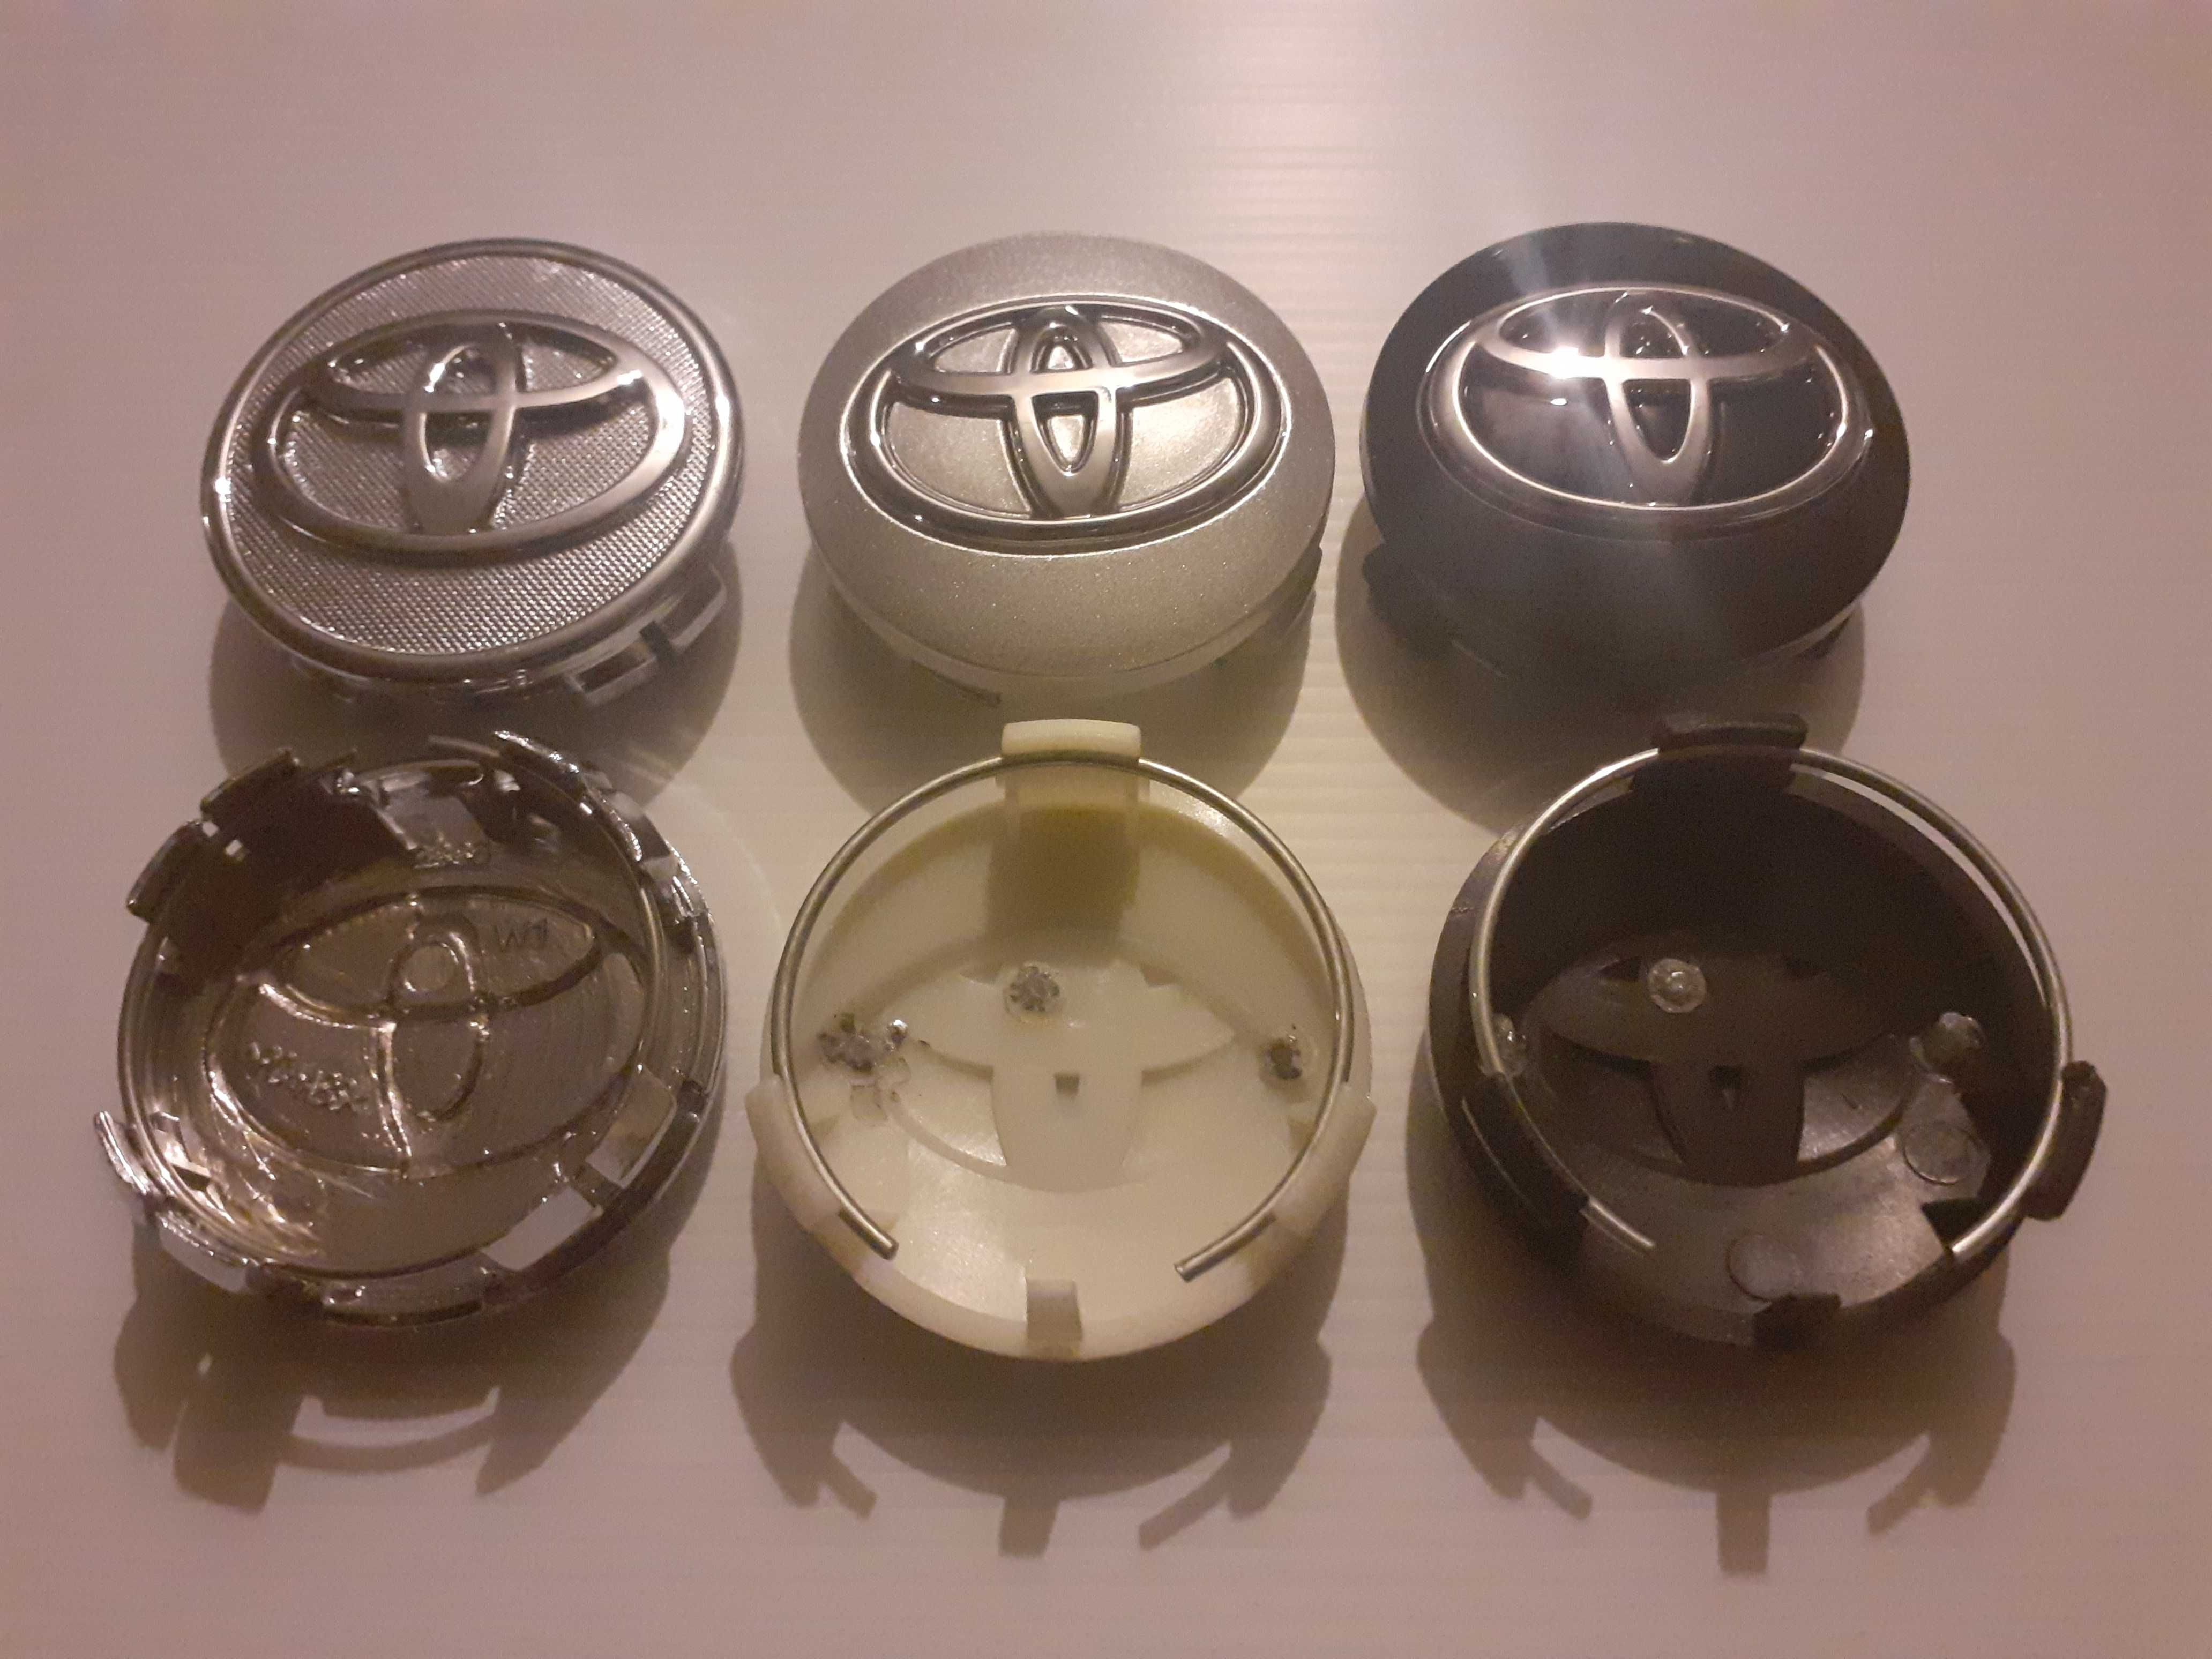 Centros/tampas de jante completos Toyota com 57, 60, 62, 65 e 68 mm